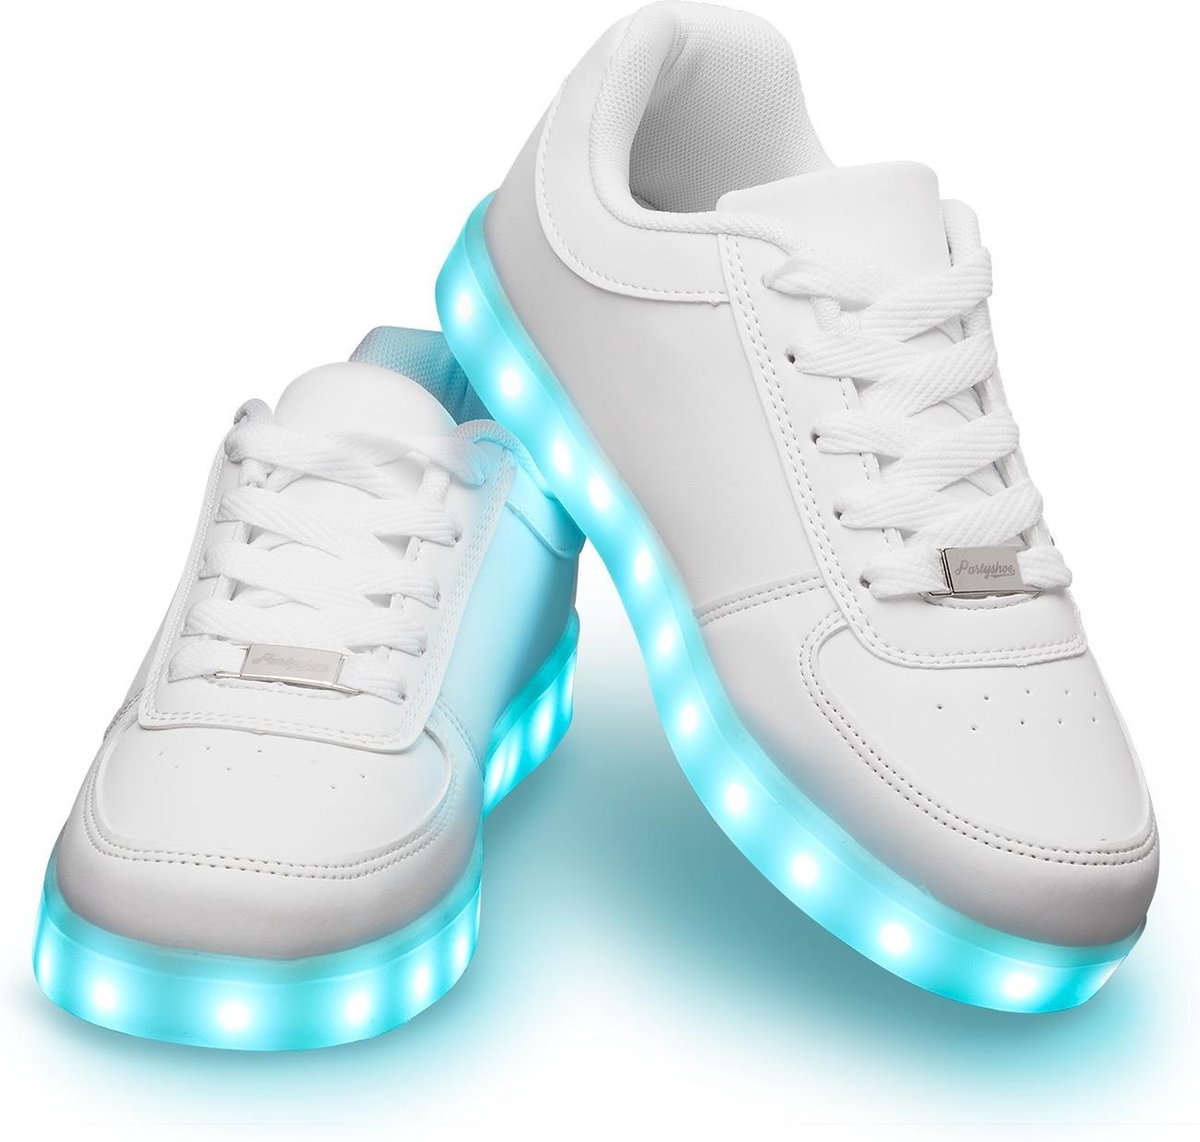 Schoenen met lichtjes - Lichtgevende schoenen Wit - Maat 39 | bol.com